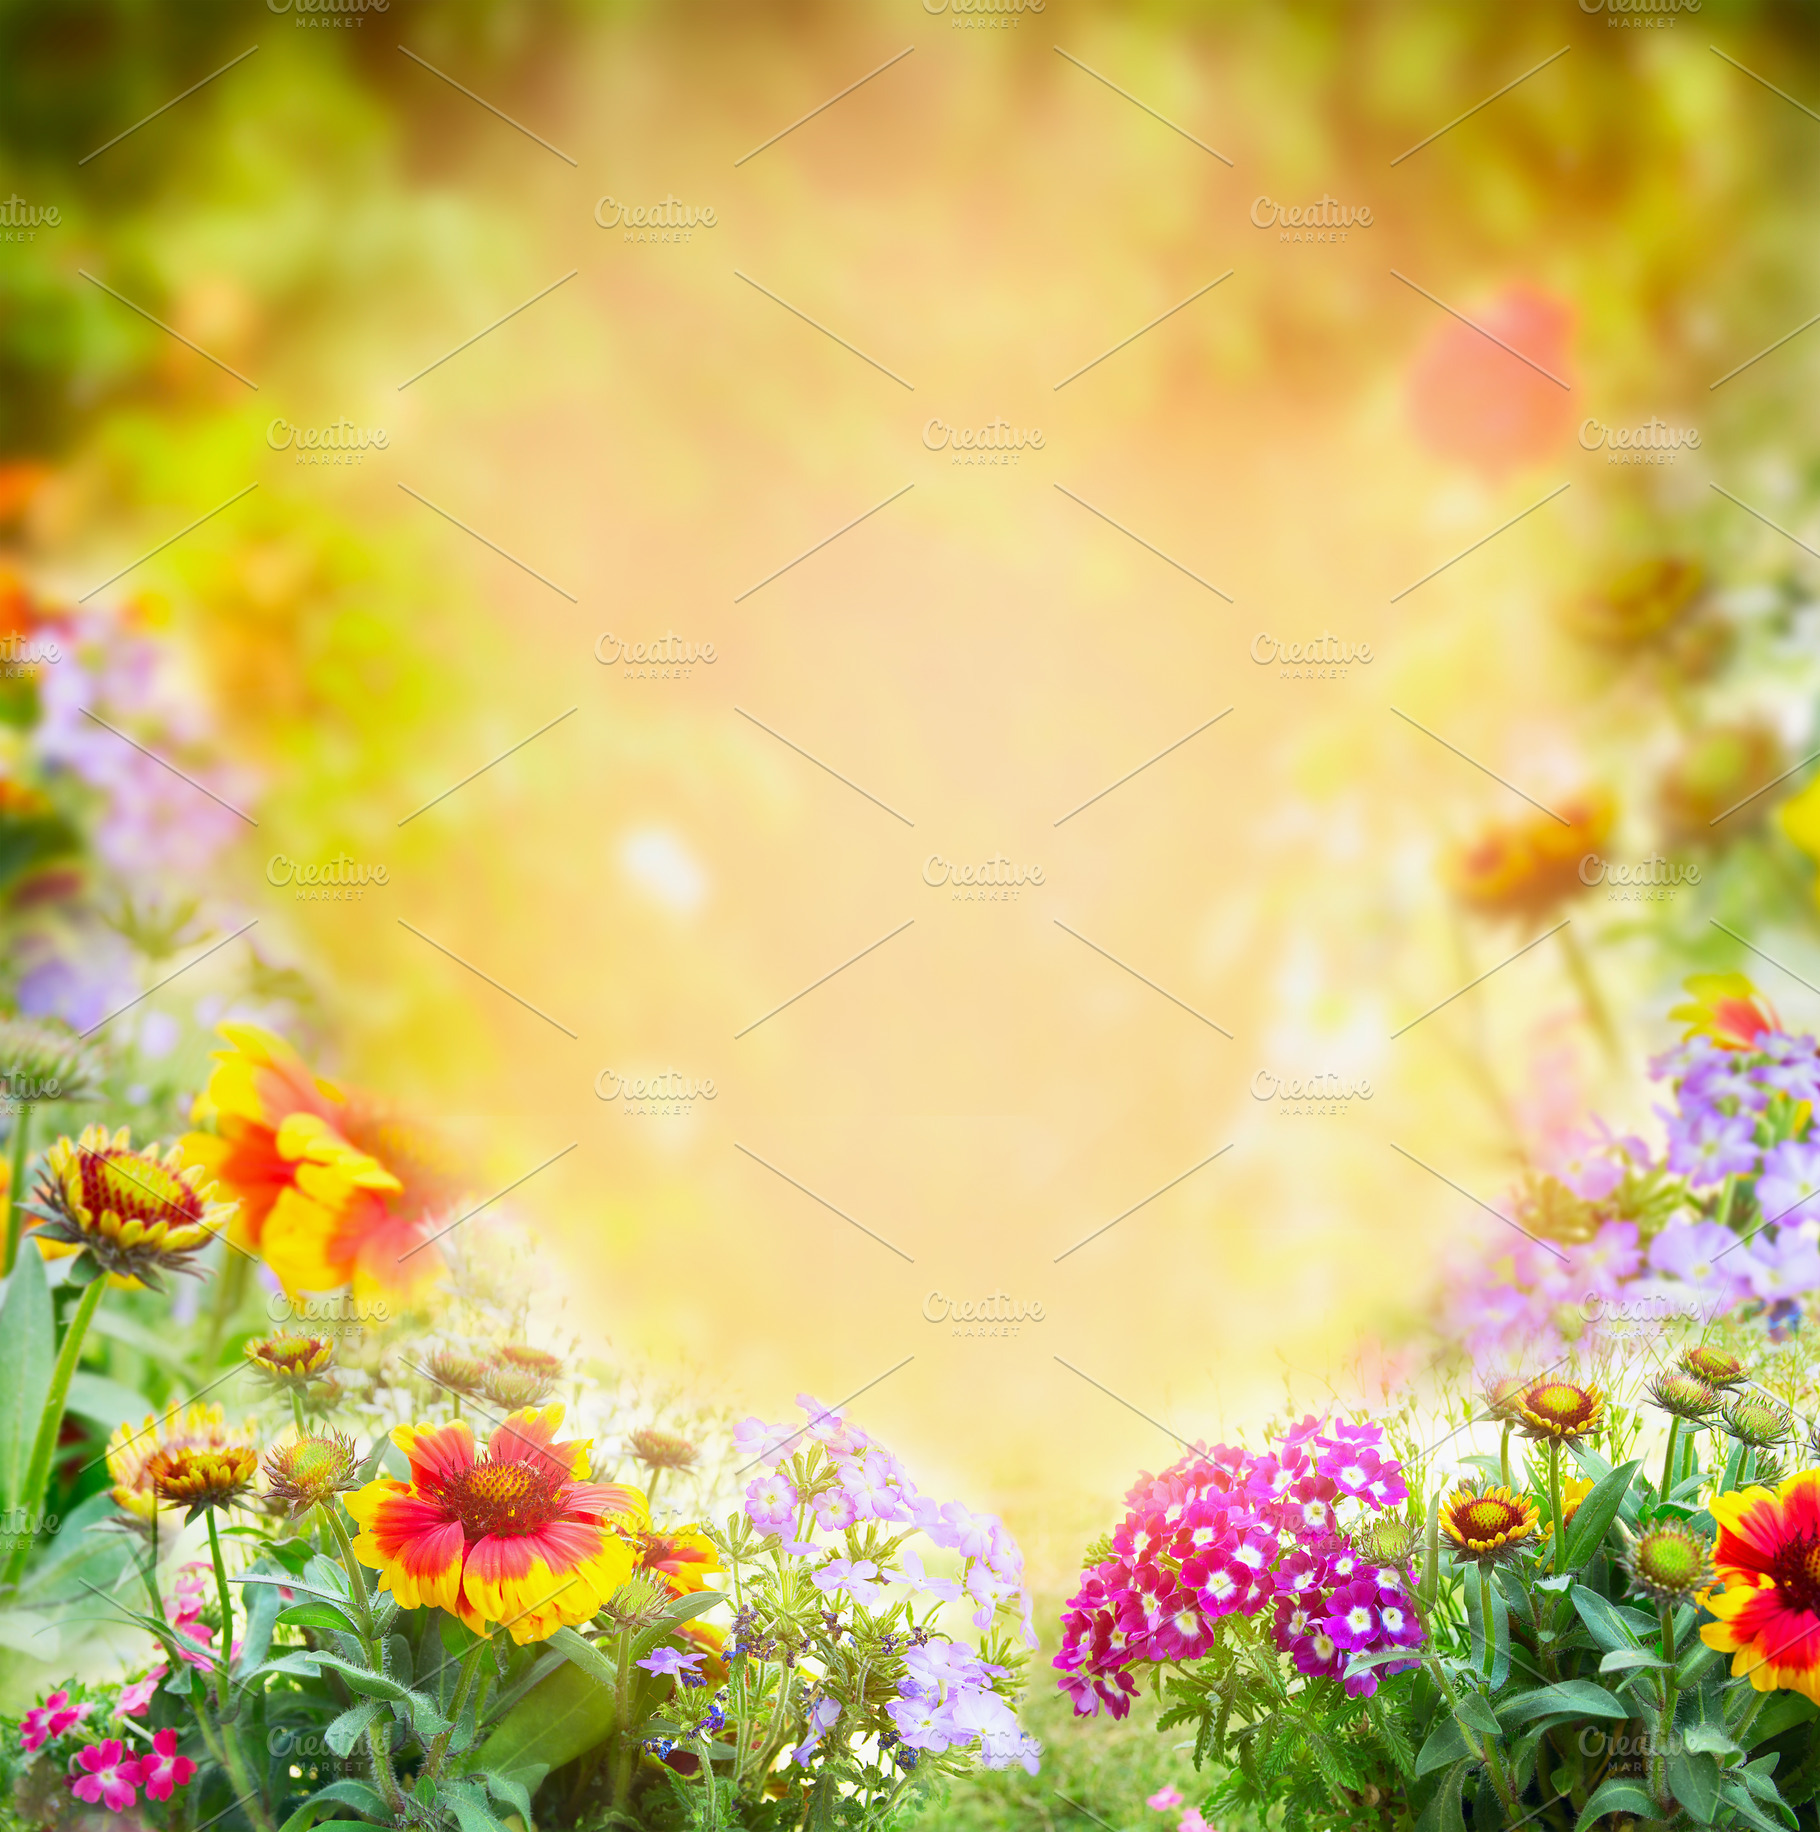 flowers garden background